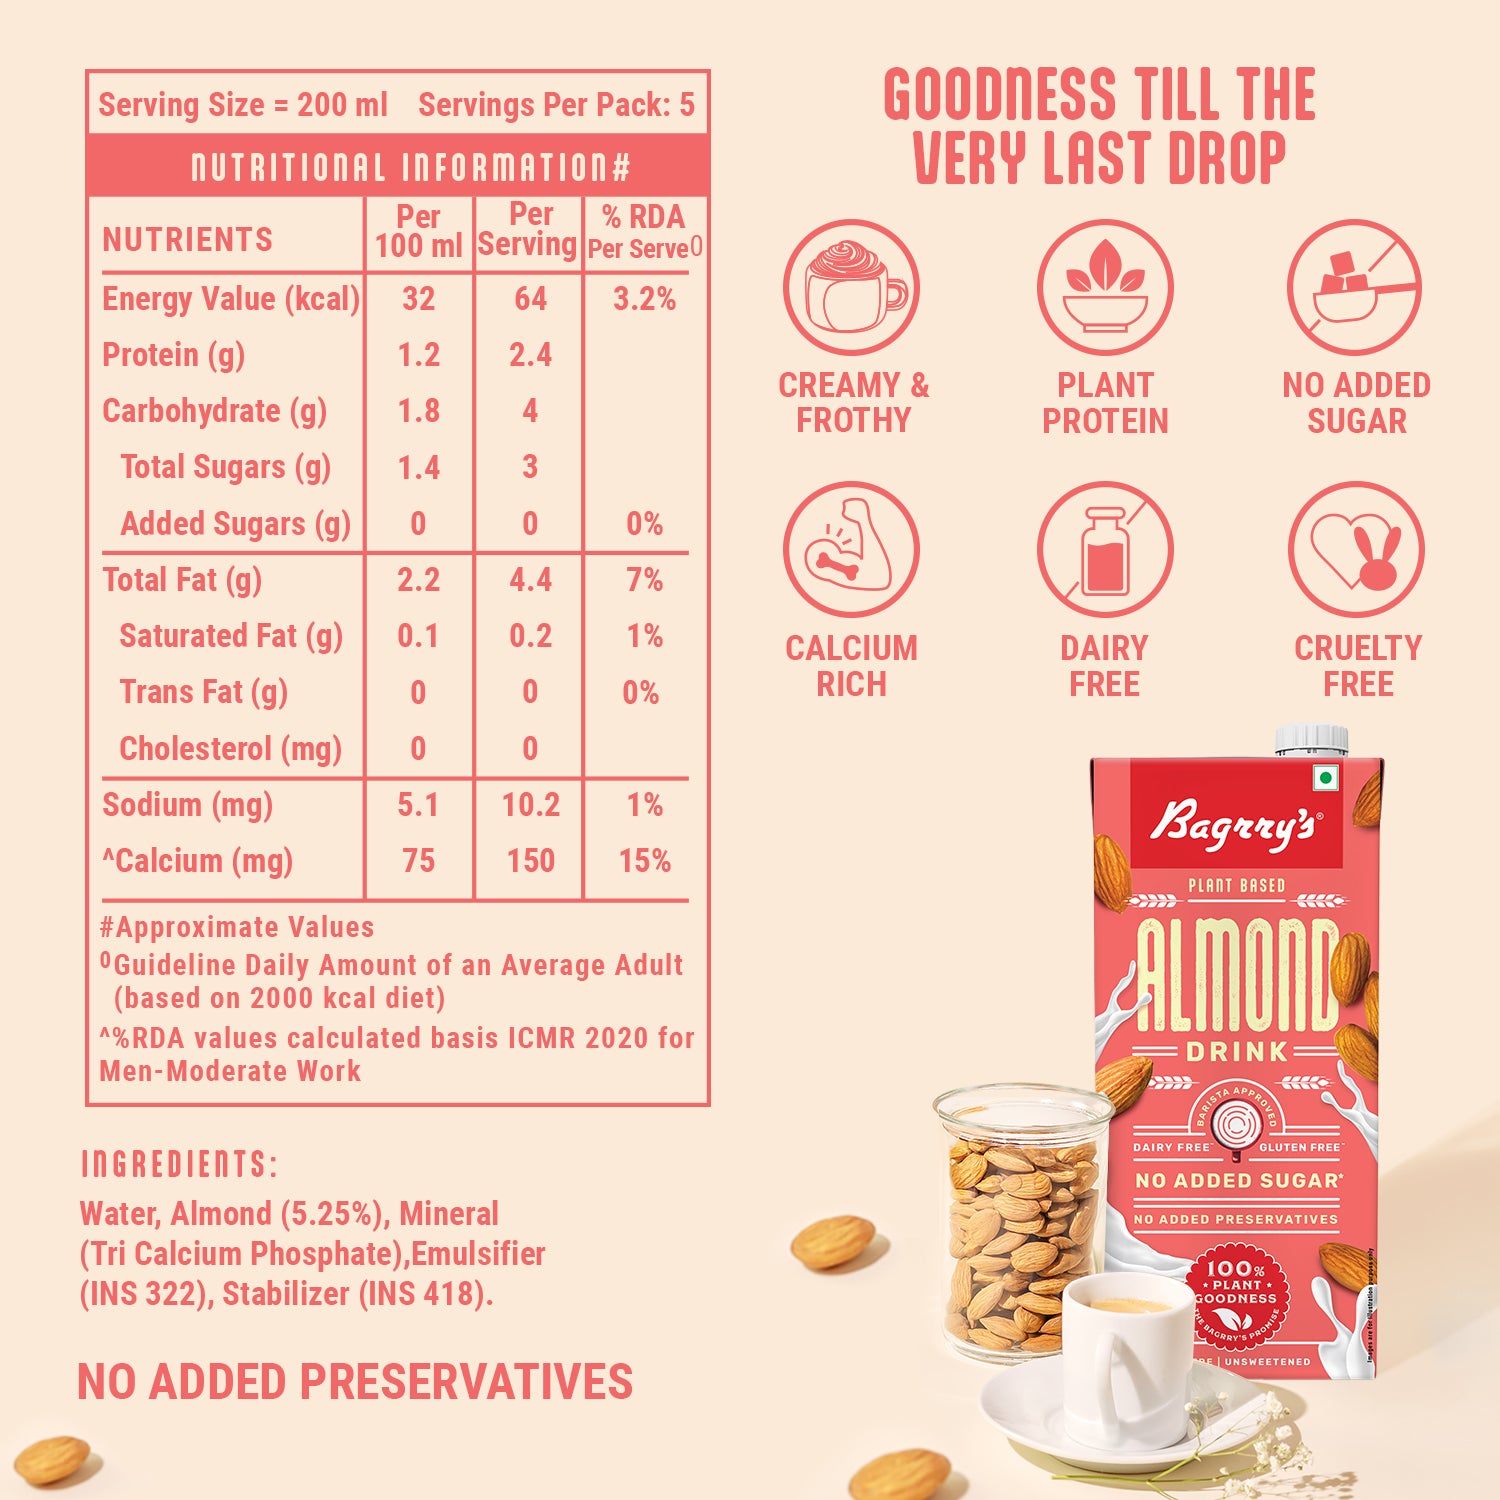 Almond Drink - Plant Based, Gluten Free, 1 Liter